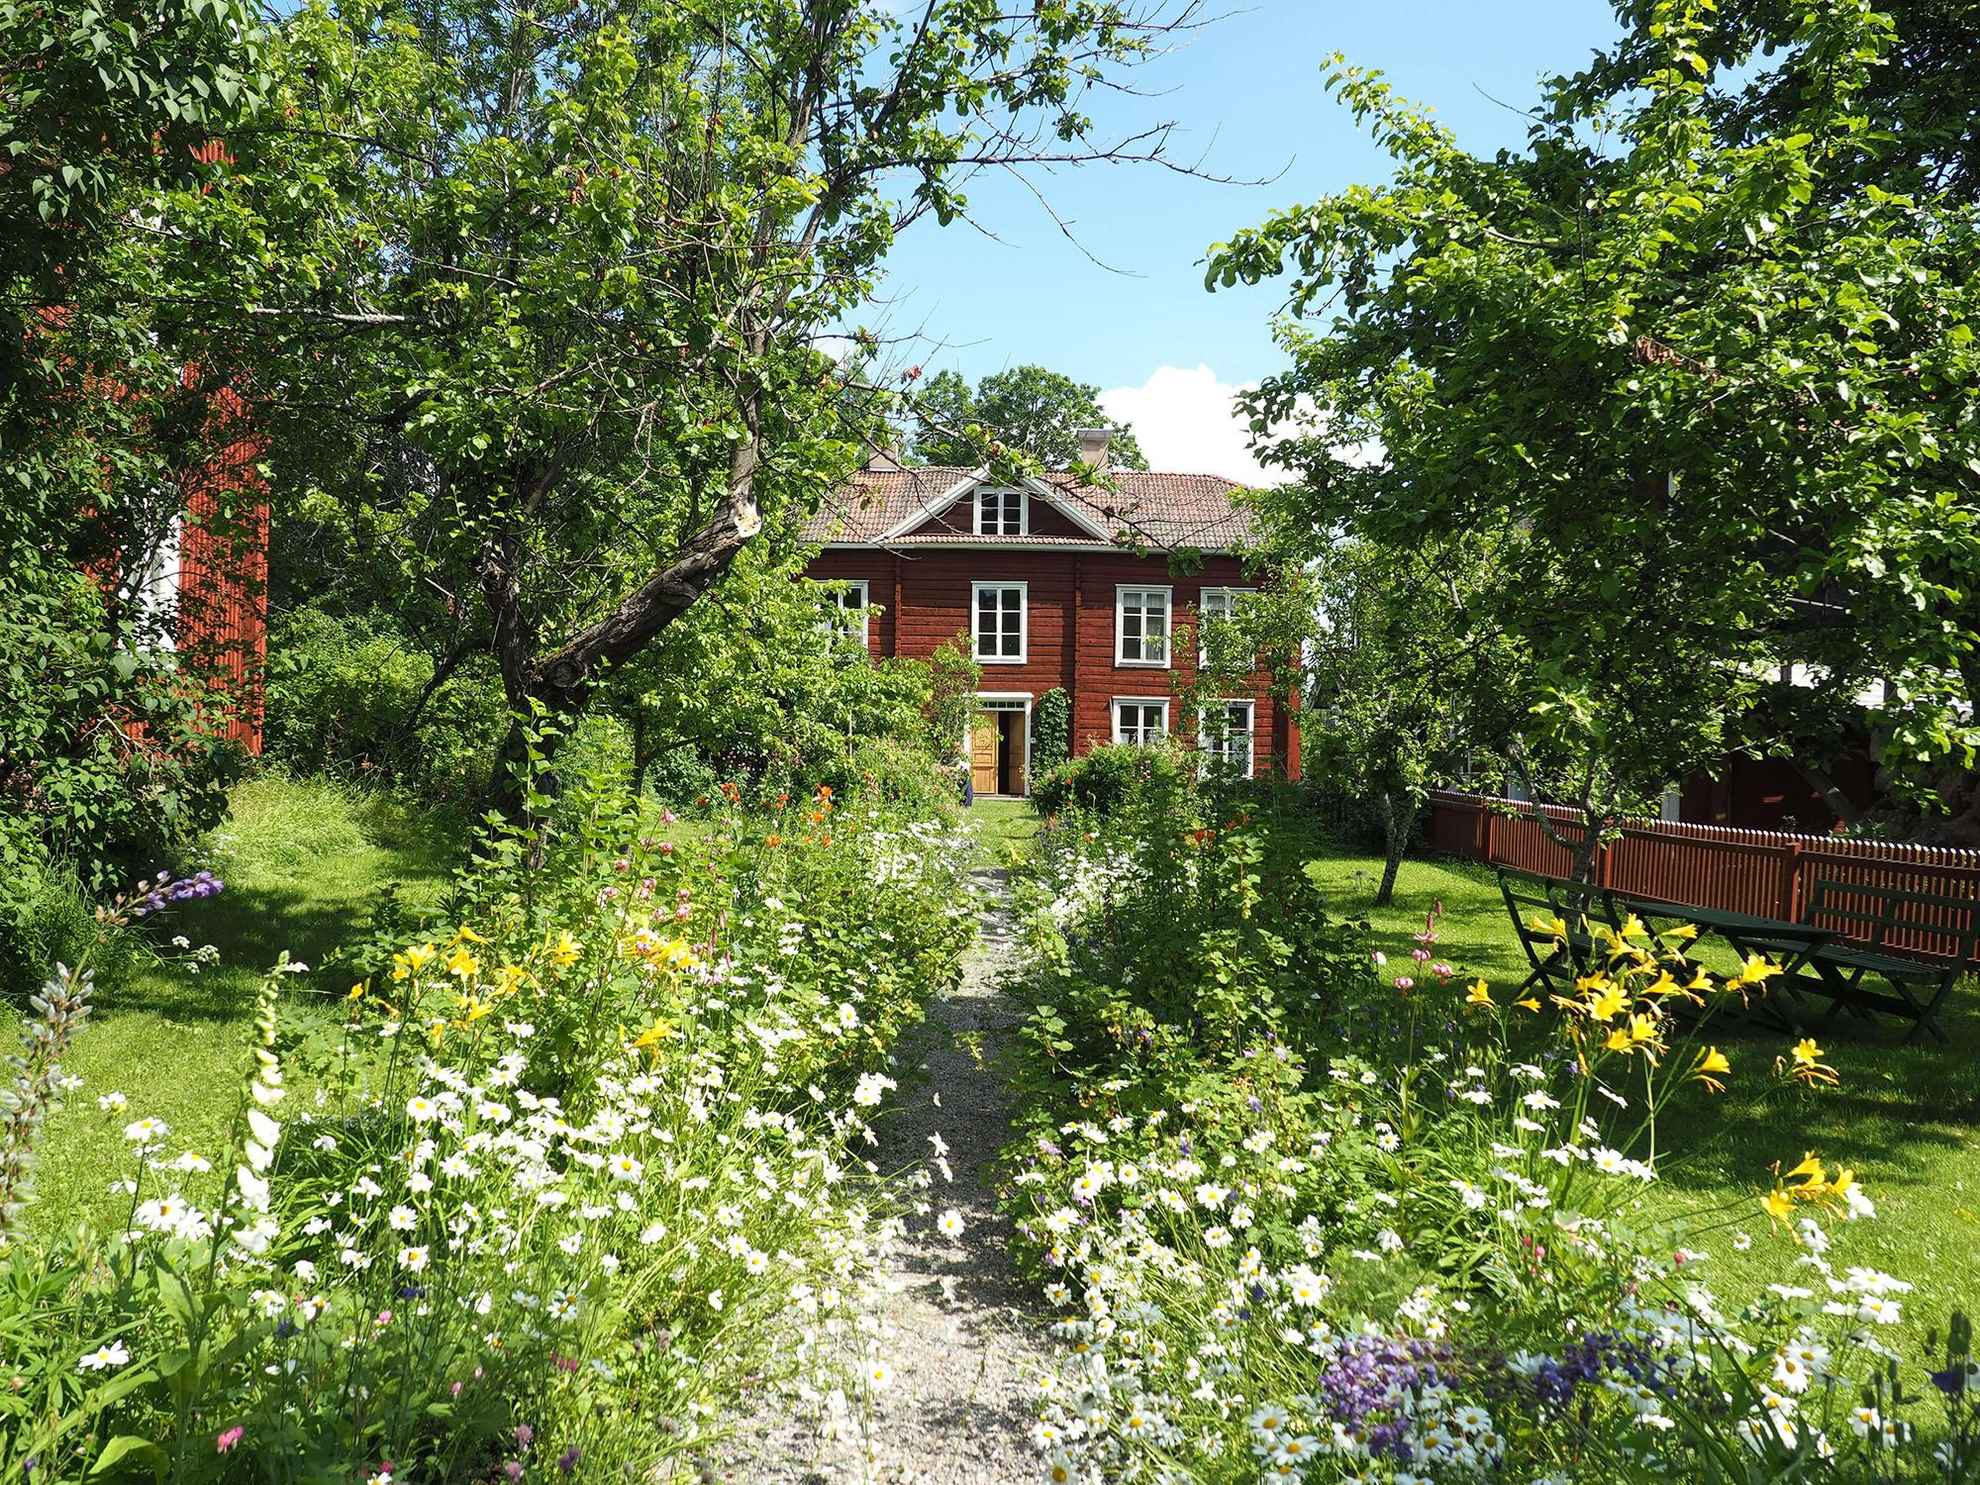 Eine Schotterstraße mit blühenden Blumen auf jeder Seite führt zu einem roten Holzhaus. Auf dem grünen Rasen stehen Gartenmöbel und Bäume.